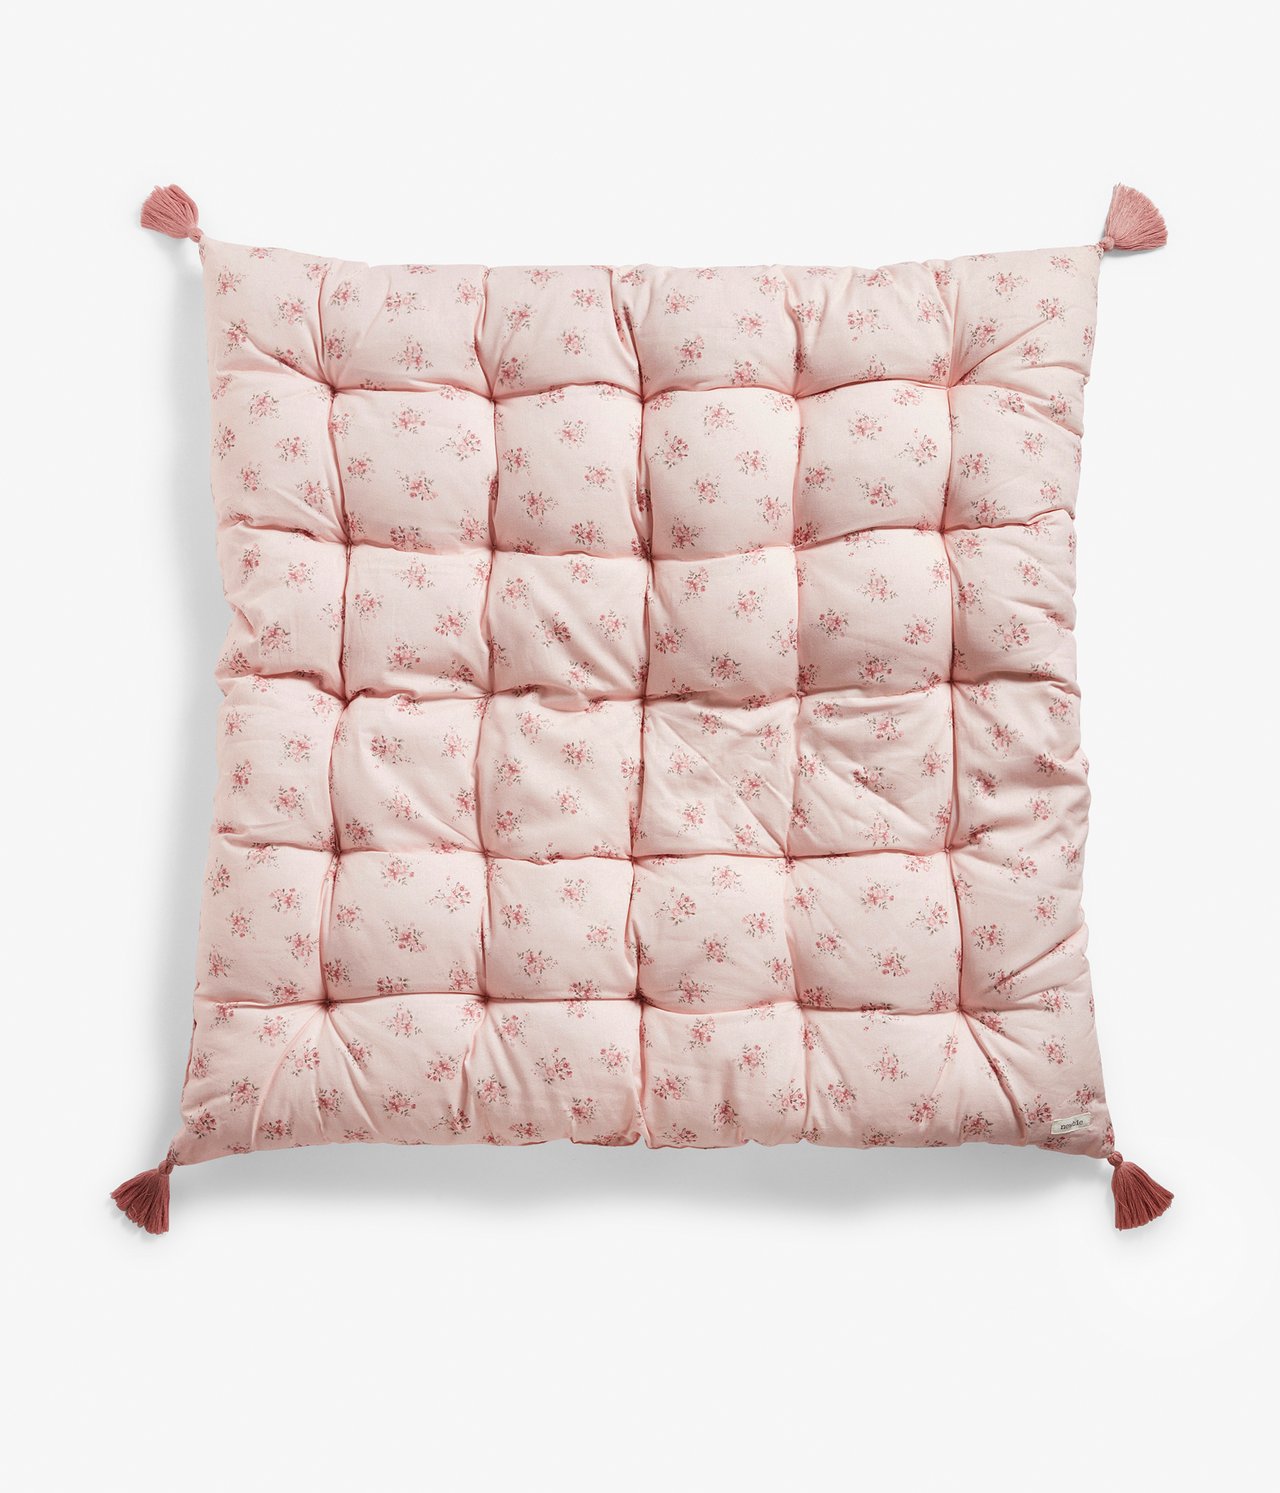 Duża poduszka do siedzenia, w kwiaty, z frędzlami, 80x80 cm - Różowy - 2